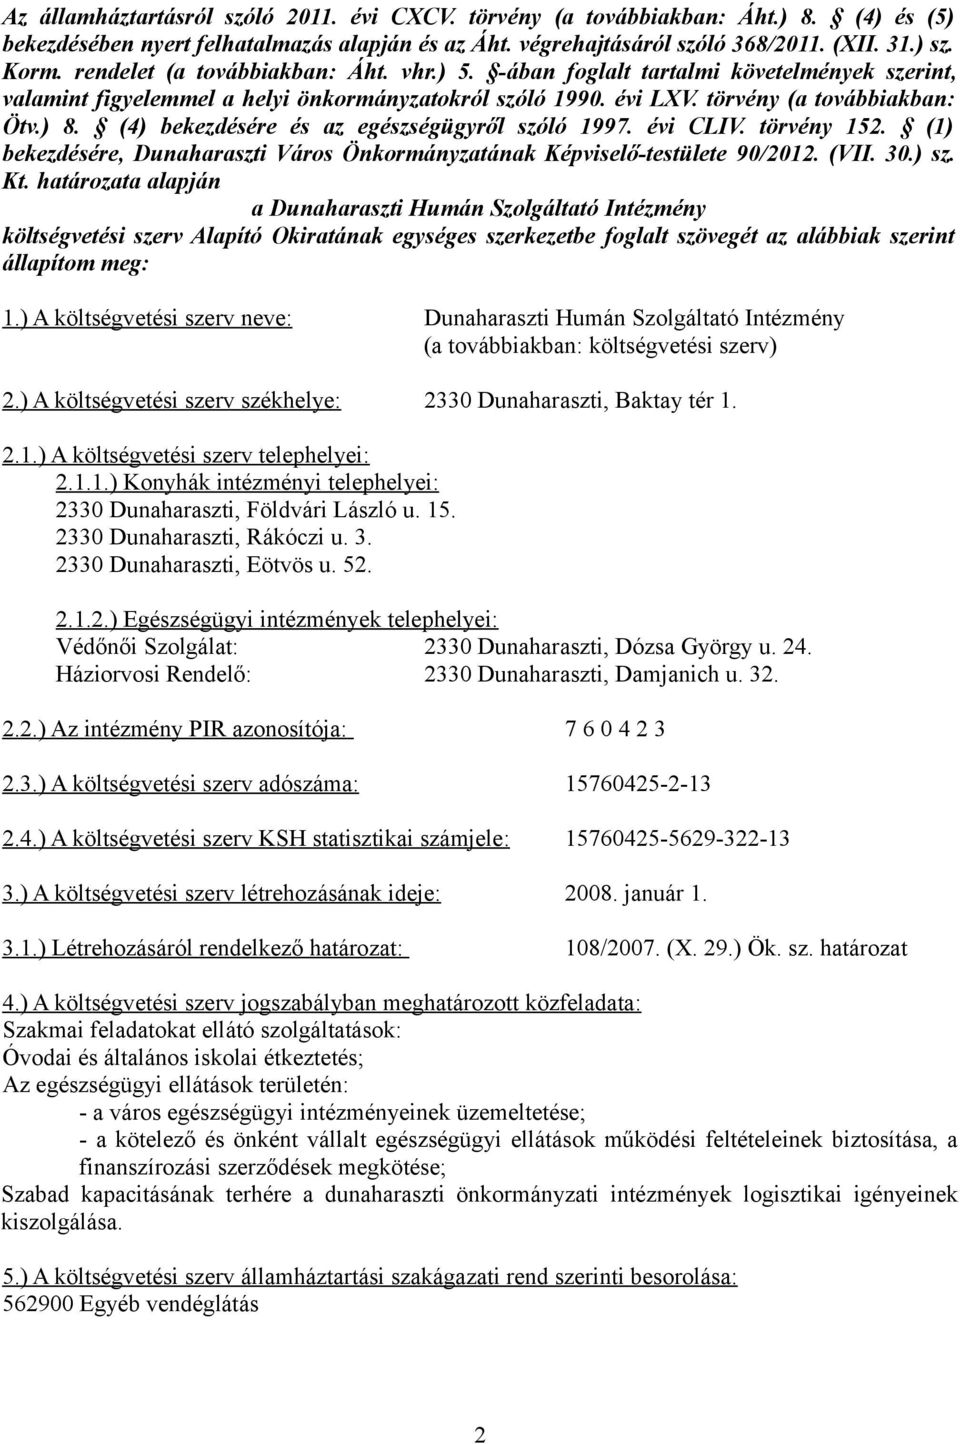 (4) bekezdésére és az egészségügyről szóló 1997. évi CLIV. törvény 152. (1) bekezdésére, Dunaharaszti Város Önkormányzatának Képviselő-testülete 90/2012. (VII. 30.) sz. Kt.